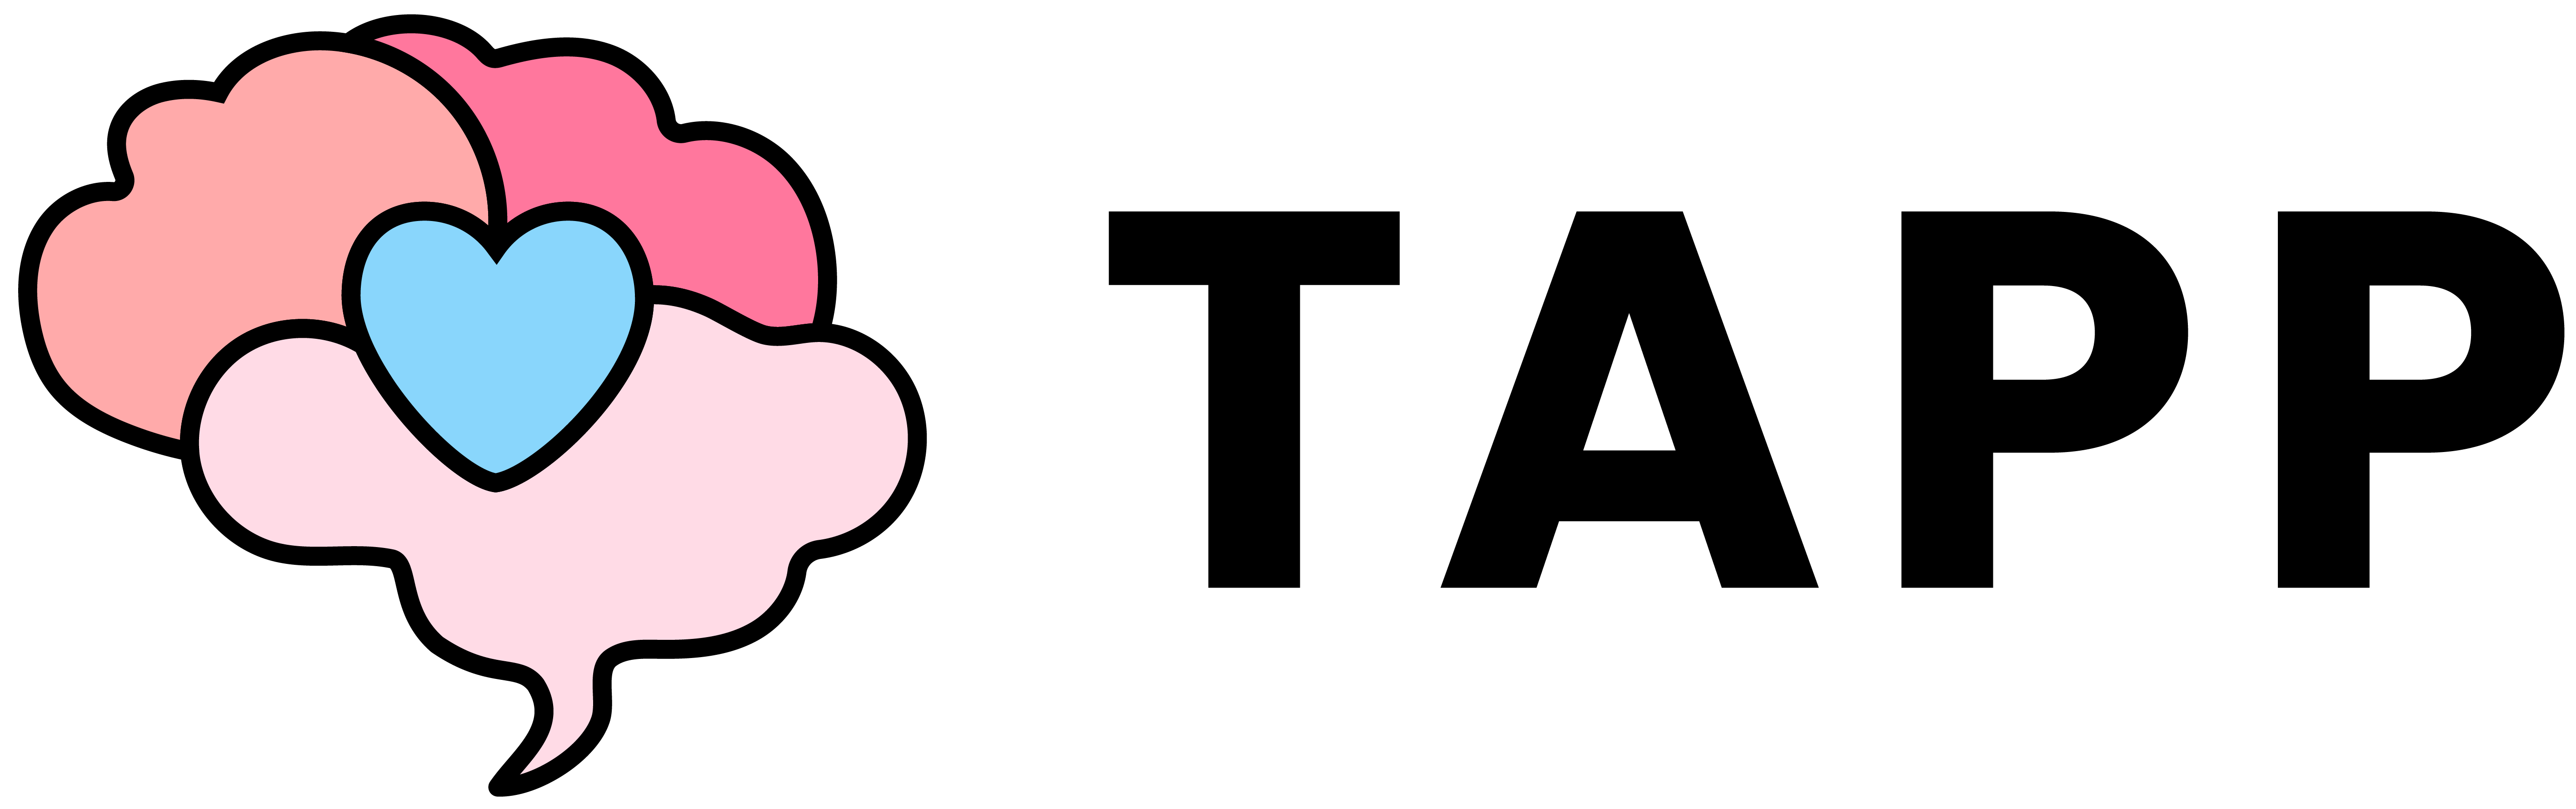 TAPP - The Teacher App logo